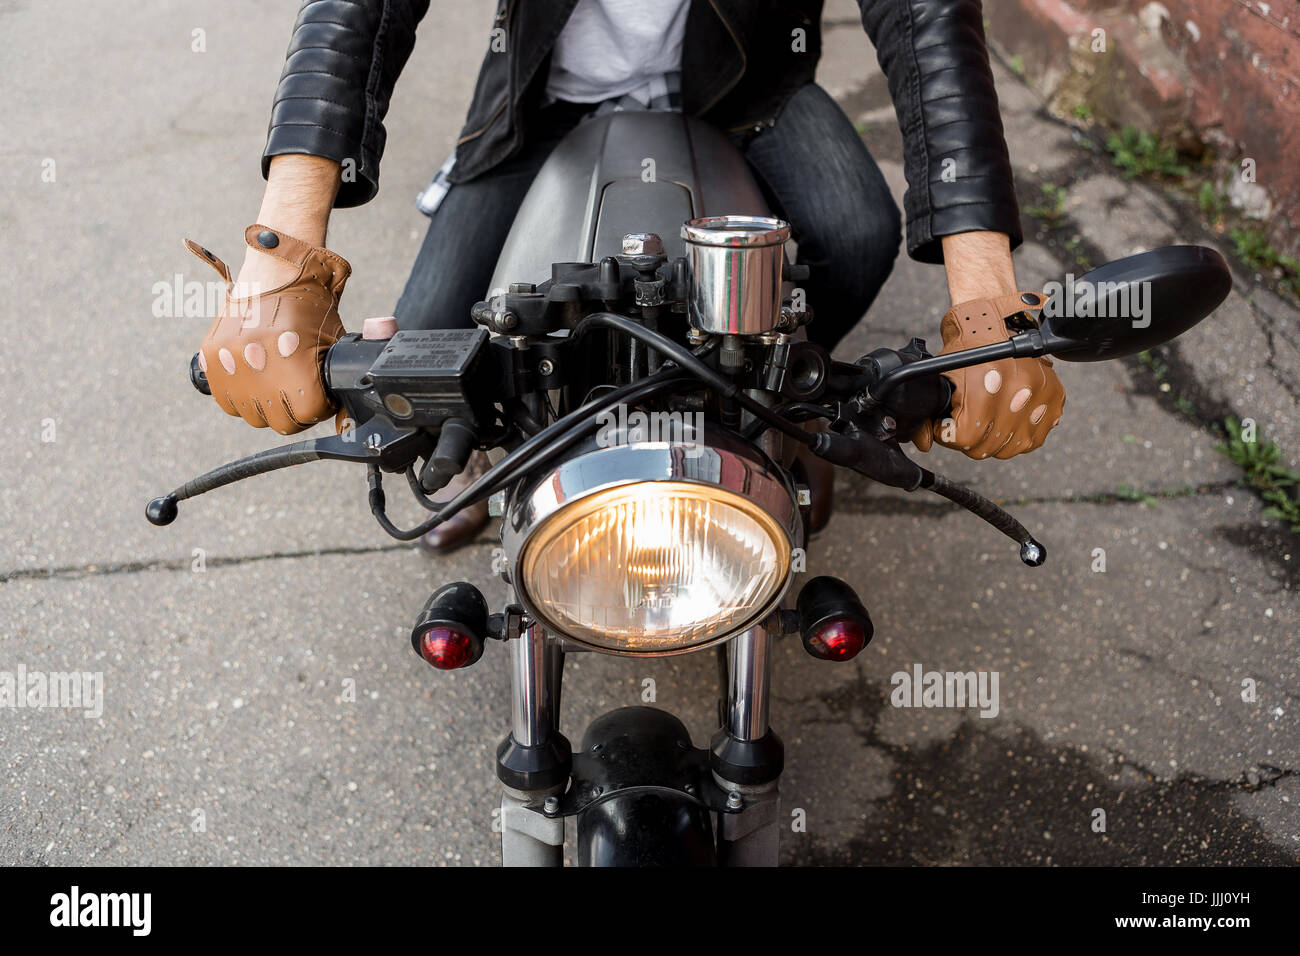 Primer plano de un hipster biker chico mano en guante mantenga el control del acelerador de estilo clásico cafe racer moto. Moto custom made en vintage garaje Fotografía de stock -